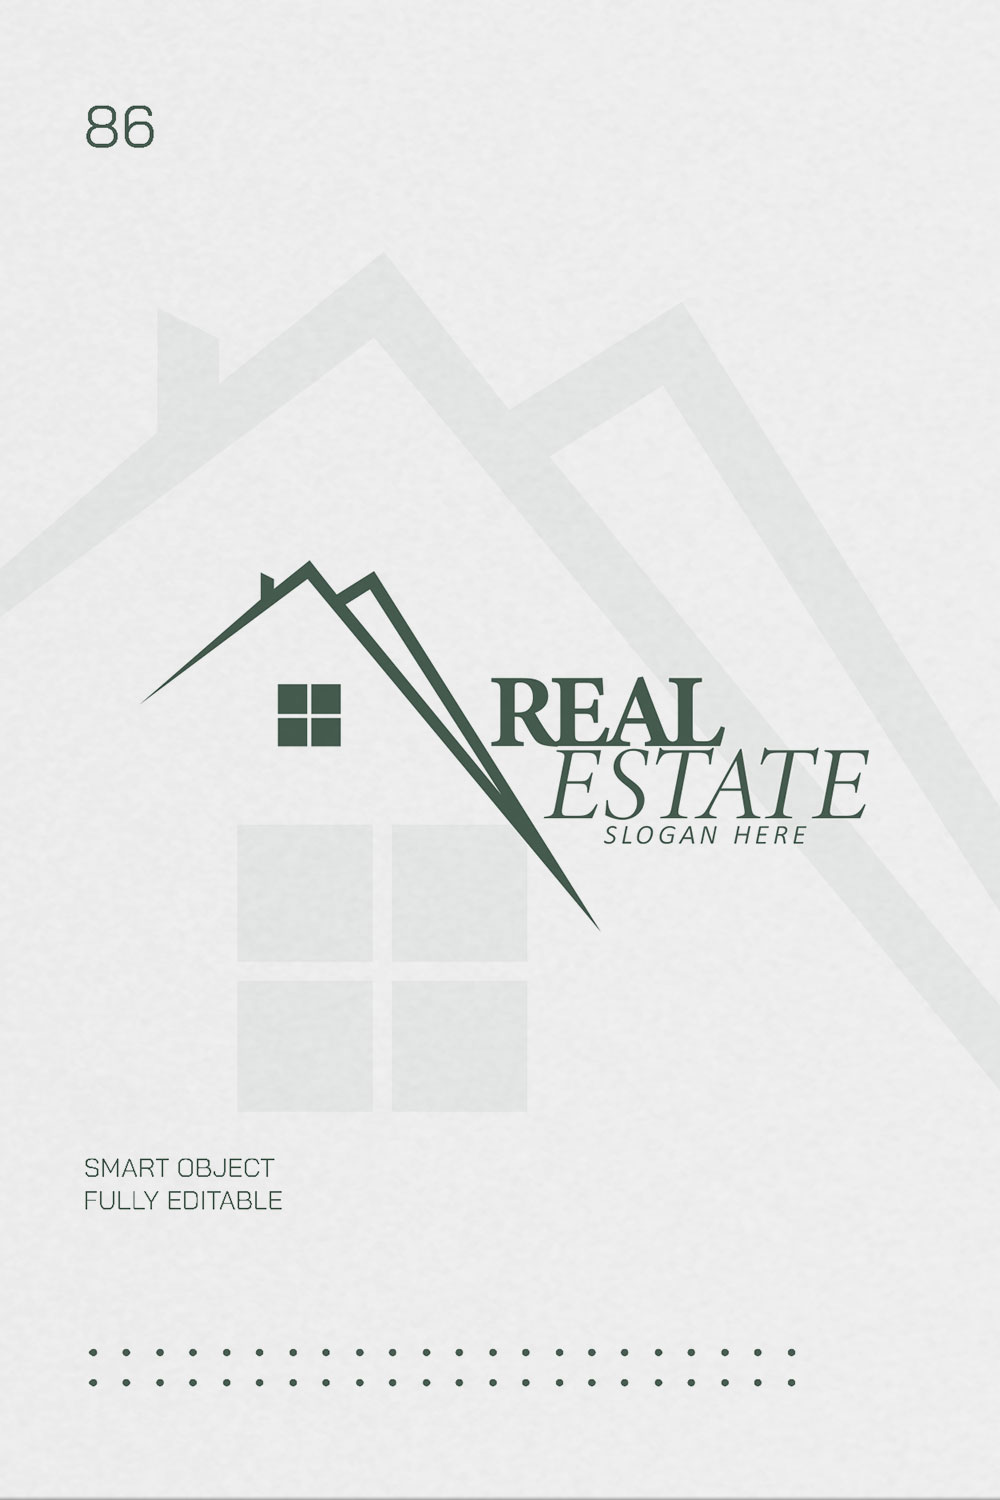 3d real estate logos